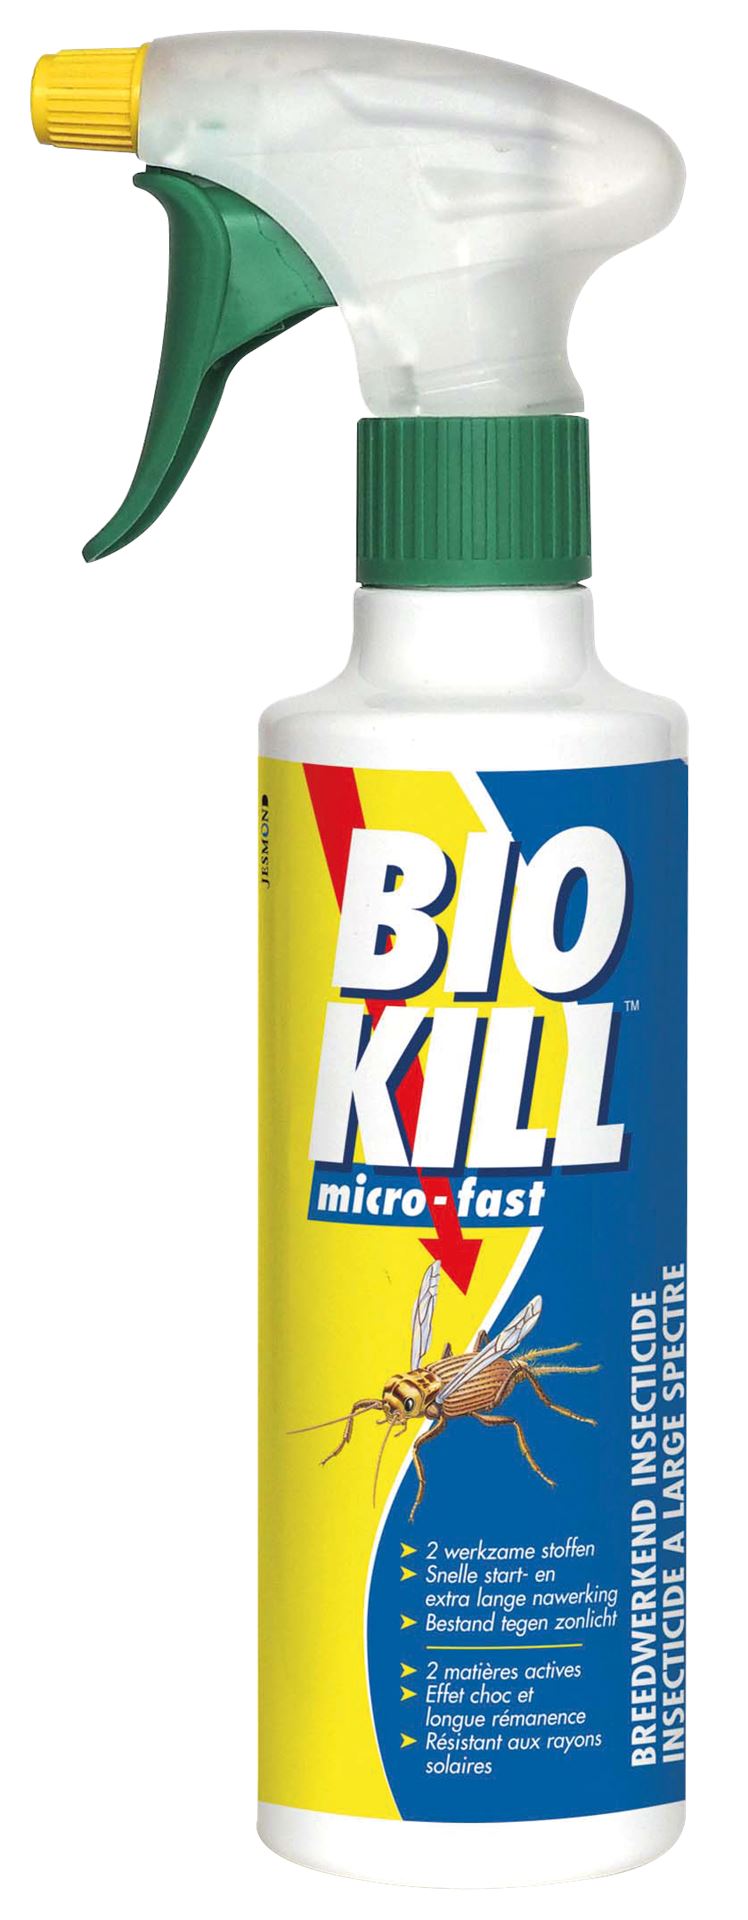 bio-kill-microfast-375ml-insecticide-van-de-nieuwste-generatie